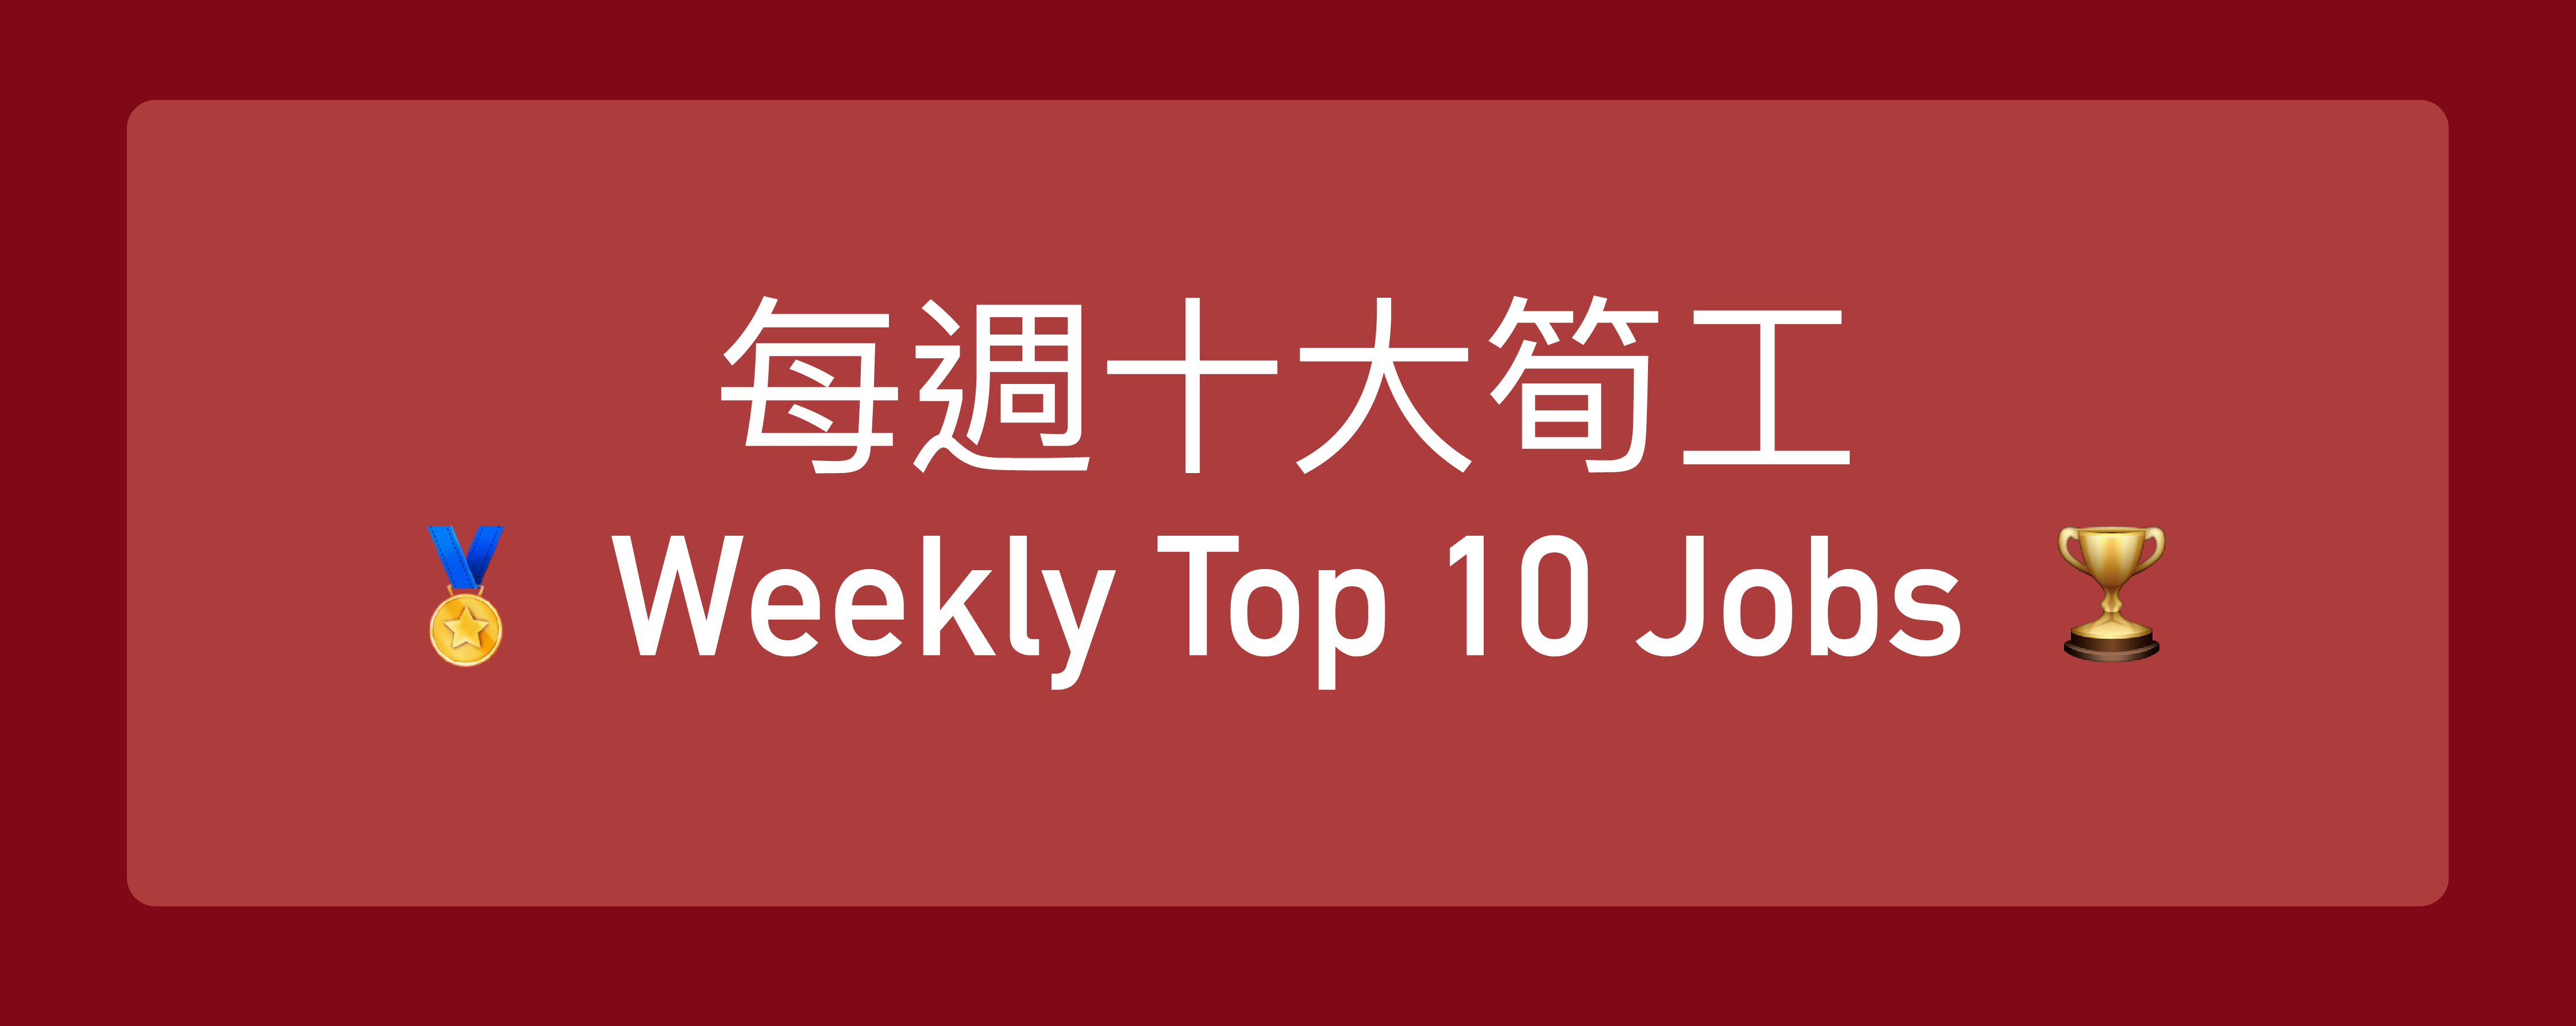 Top 10 Jobs weekly-01.png